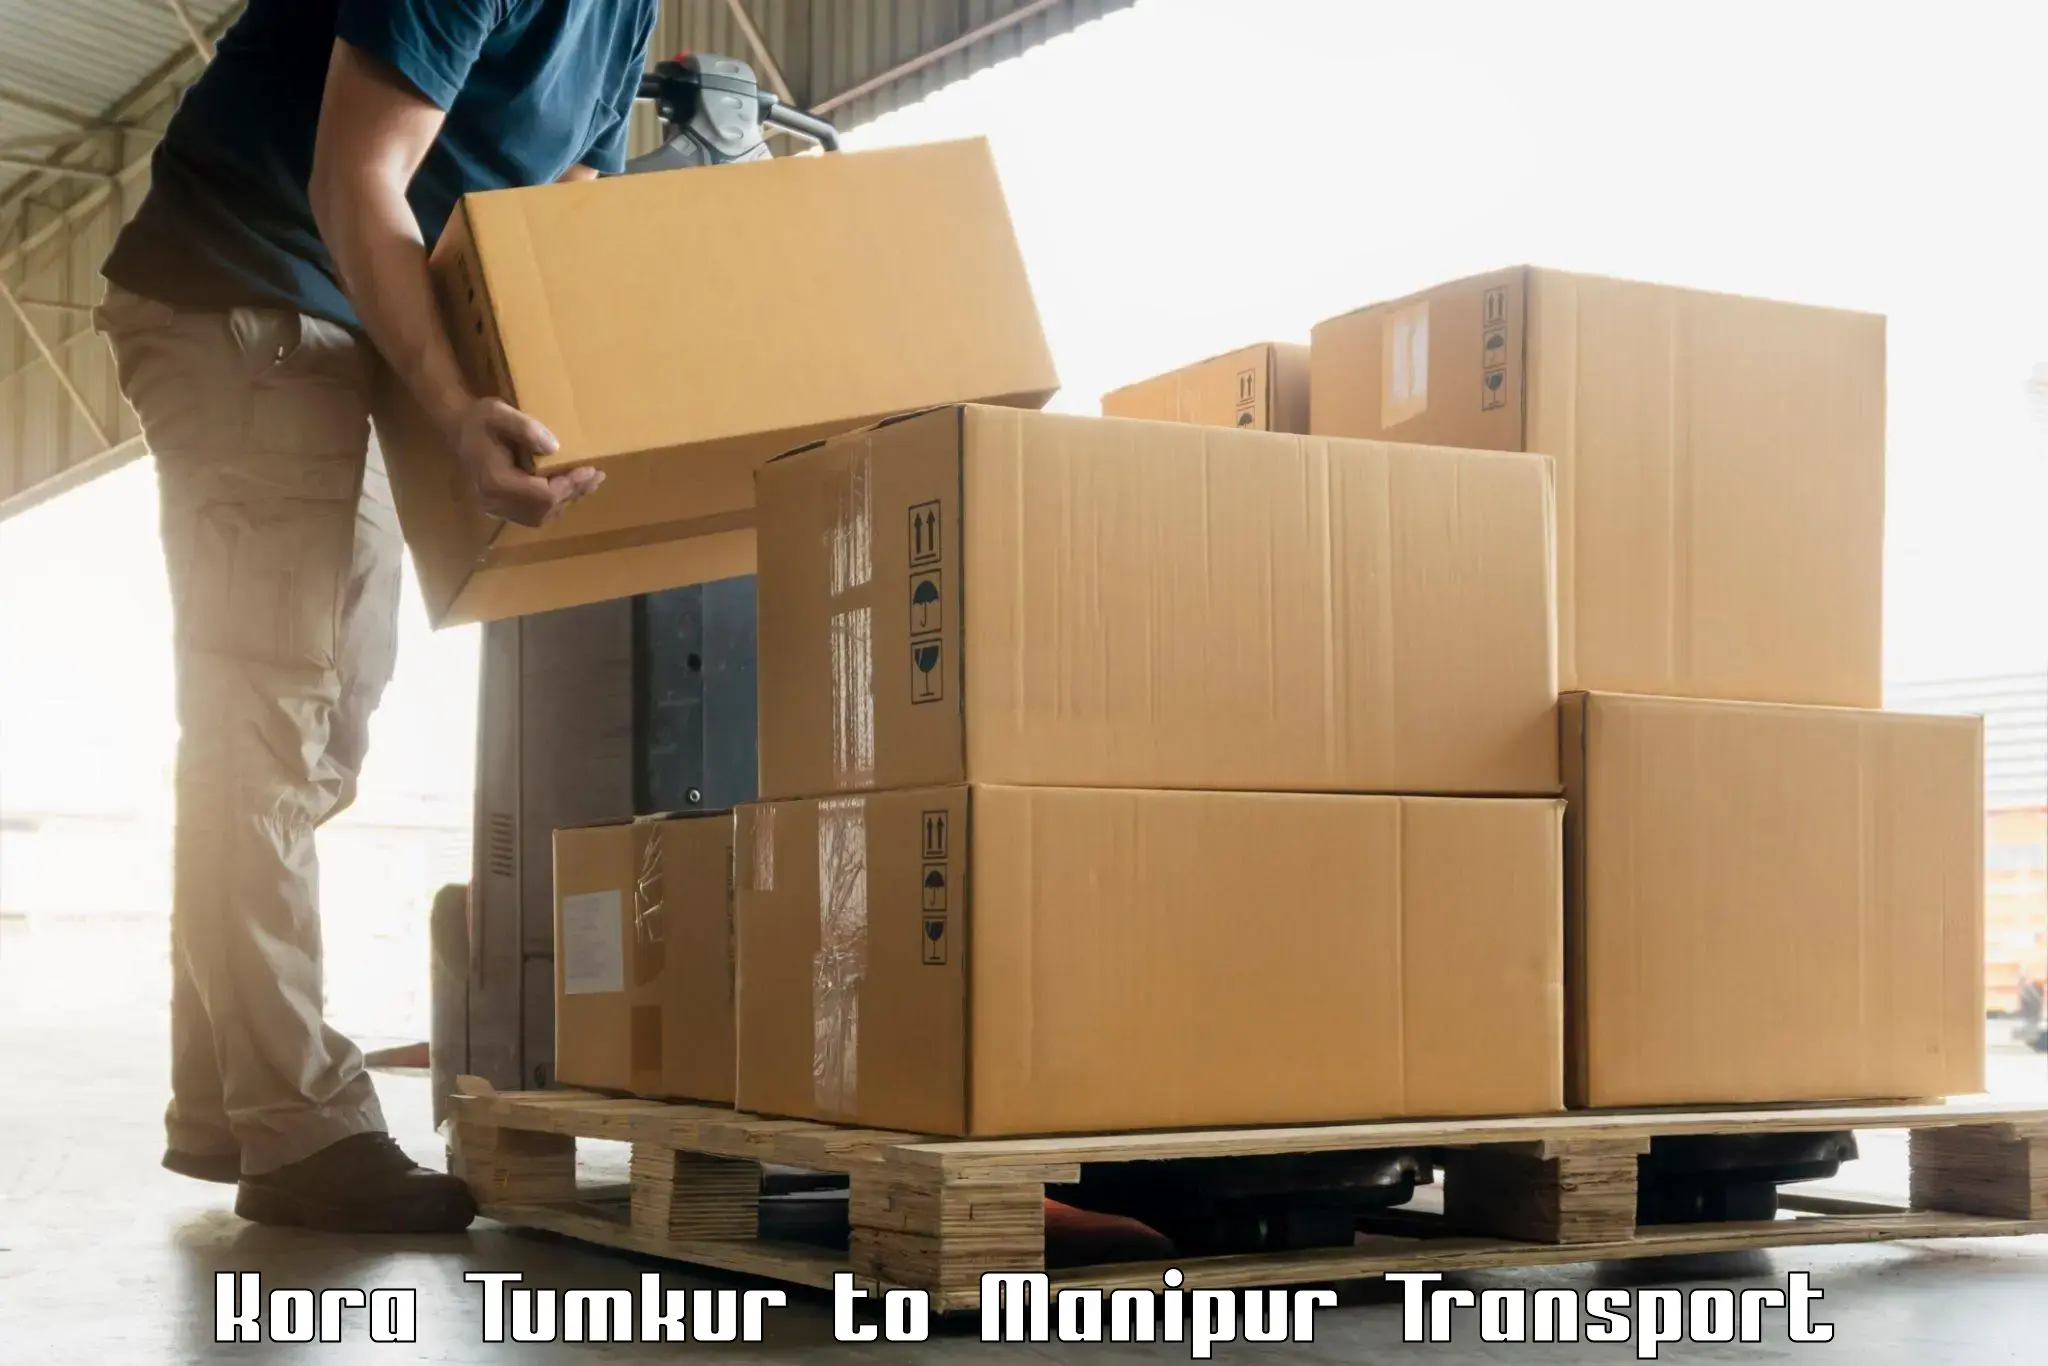 Nearest transport service Kora Tumkur to IIIT Senapati